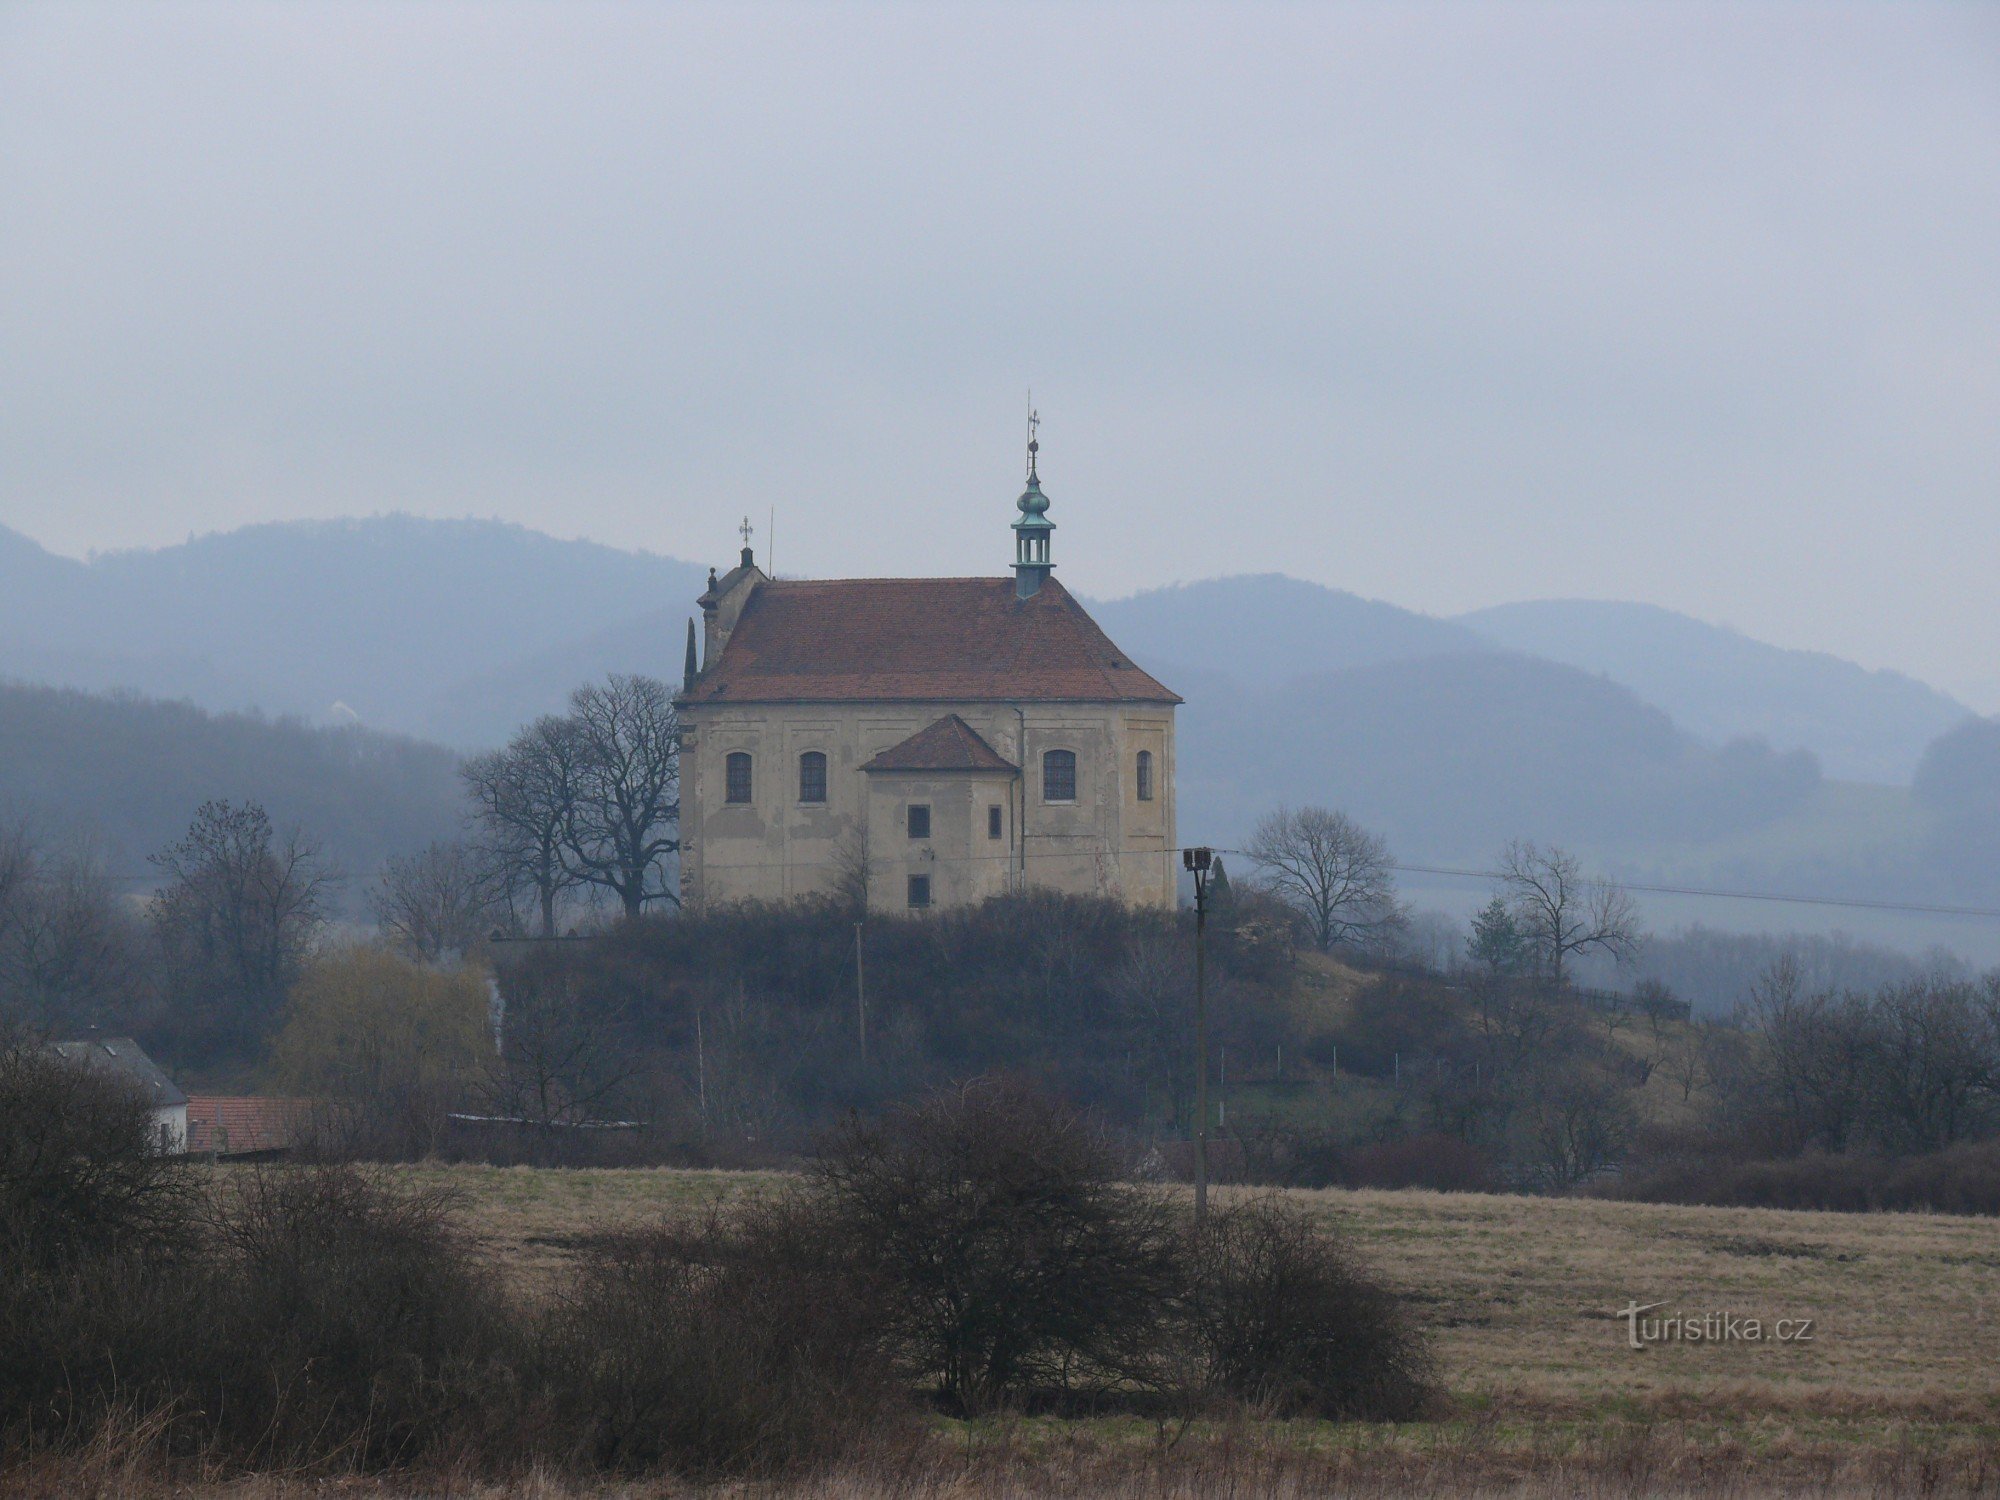 Η εκκλησία όπως φαίνεται από τον Milesov